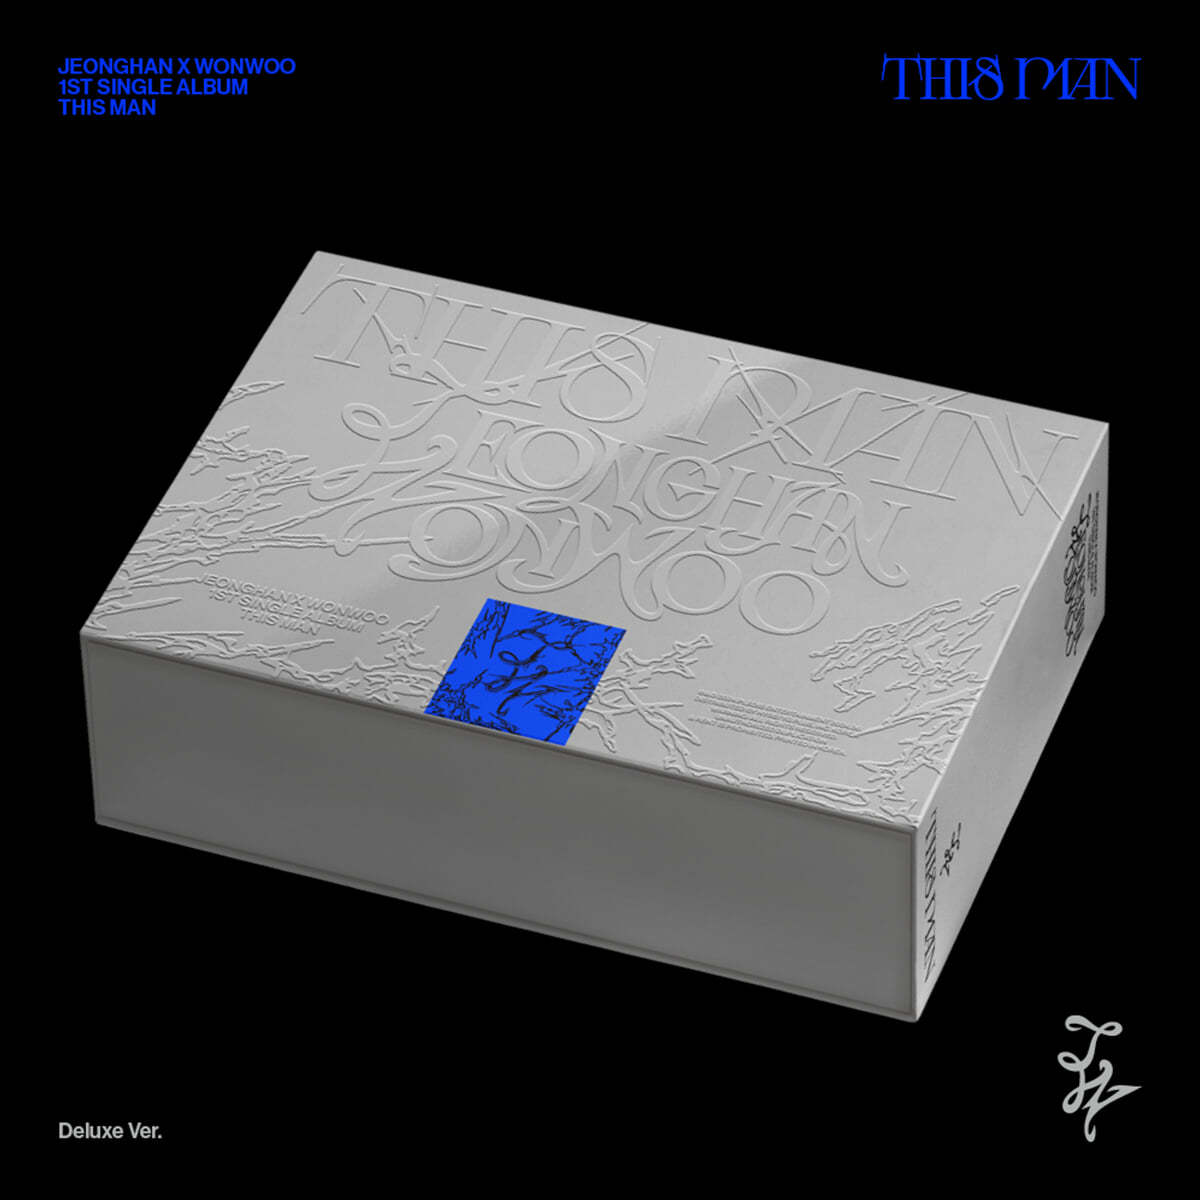 [공동구매] 정한X원우 (SEVENTEEN) - 1st Single Album 'THIS MAN' [Deluxe Ver.]